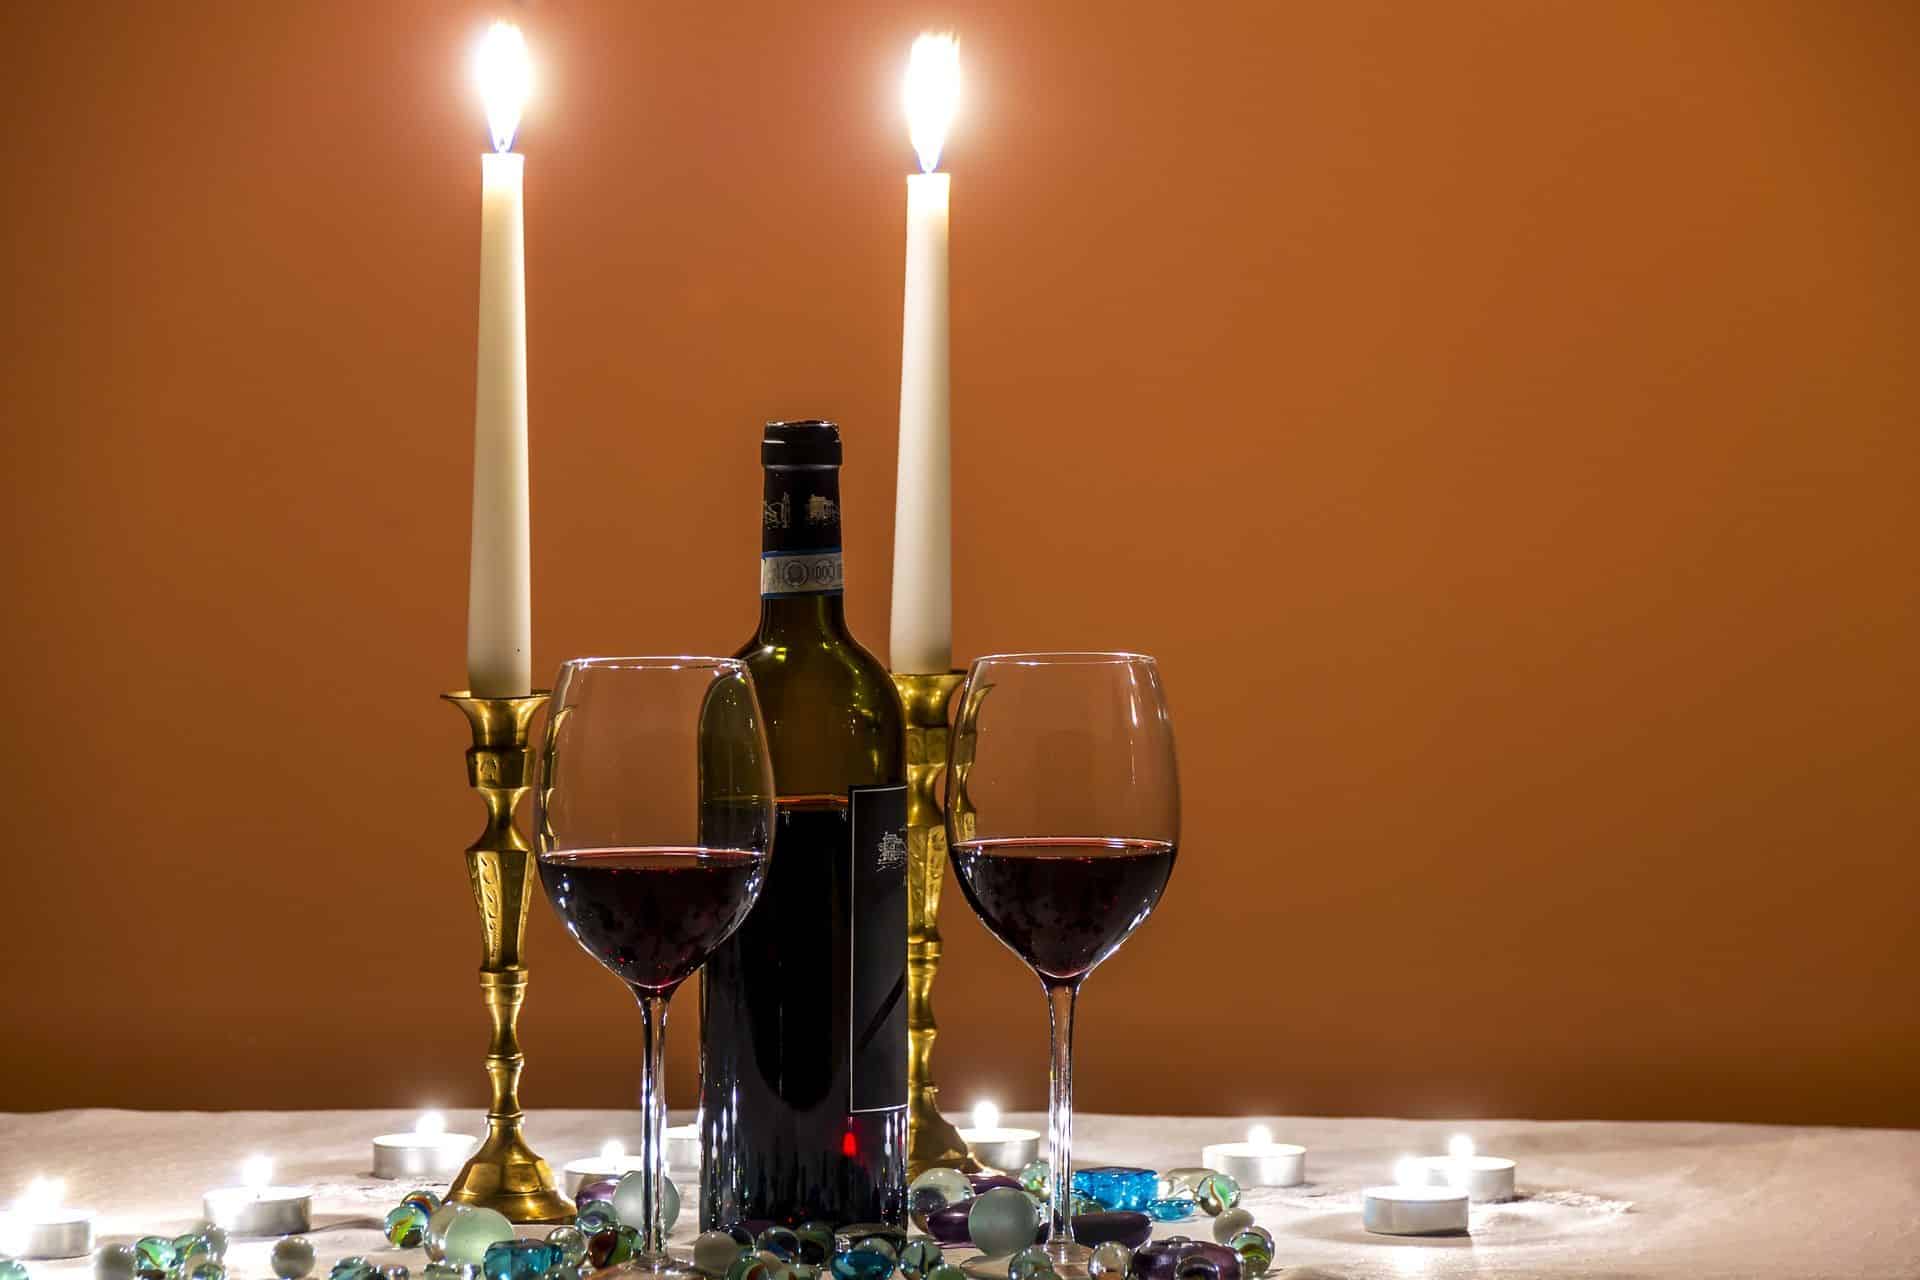 כה כתב הרמב"ם: "ארבעה כוסות האלו צריך למזוג אותן כדי שתהיה שתייה עריבה, הכל לפי היין ולפי דעת השותה". צילום pixabay